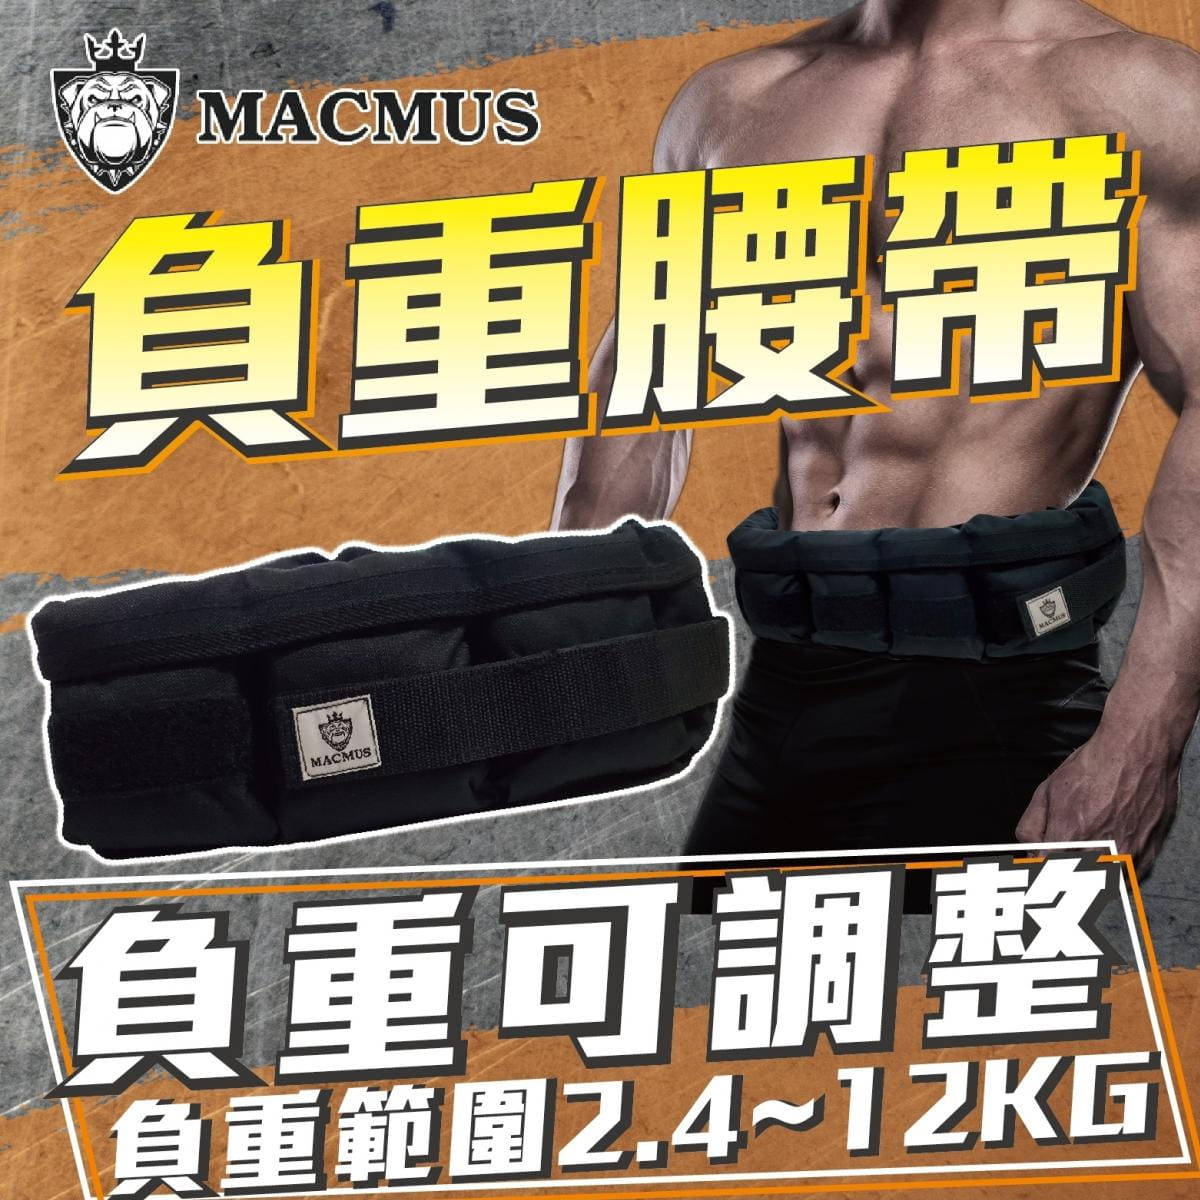 【MACMUS】12公斤負重腰帶｜8格式可調整重訓腰帶｜強化核心肌群鍛鍊腰部肌肉 0